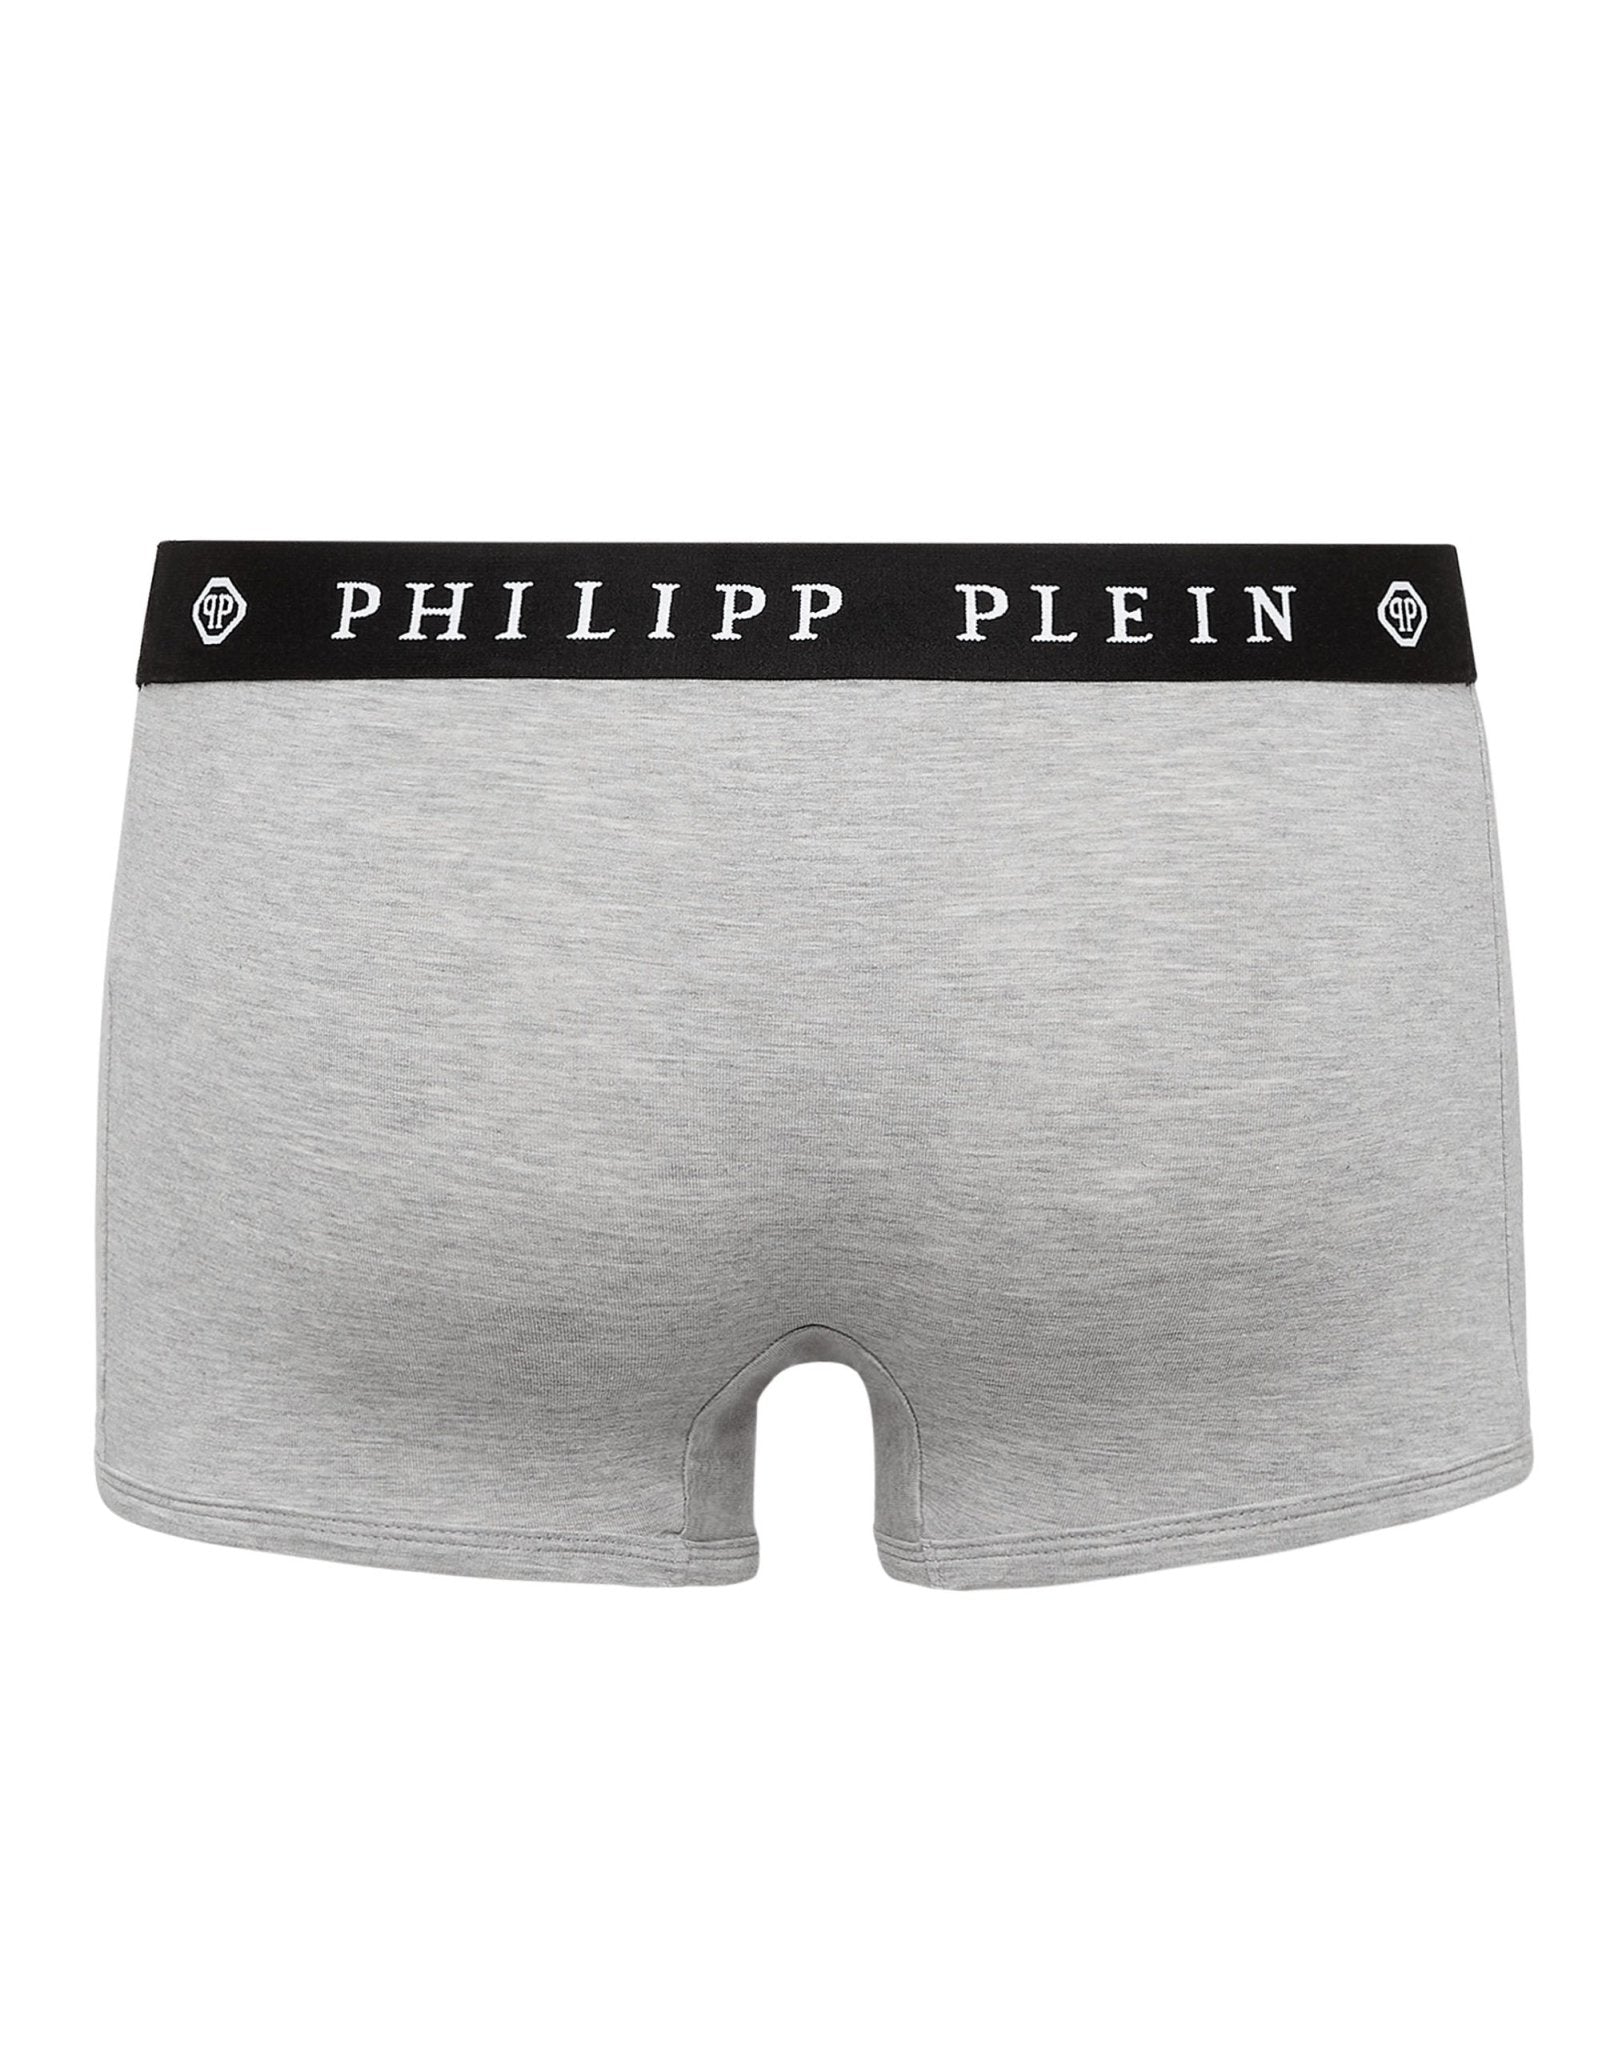 Philippe Model Gray Cotton Underwear - Fizigo